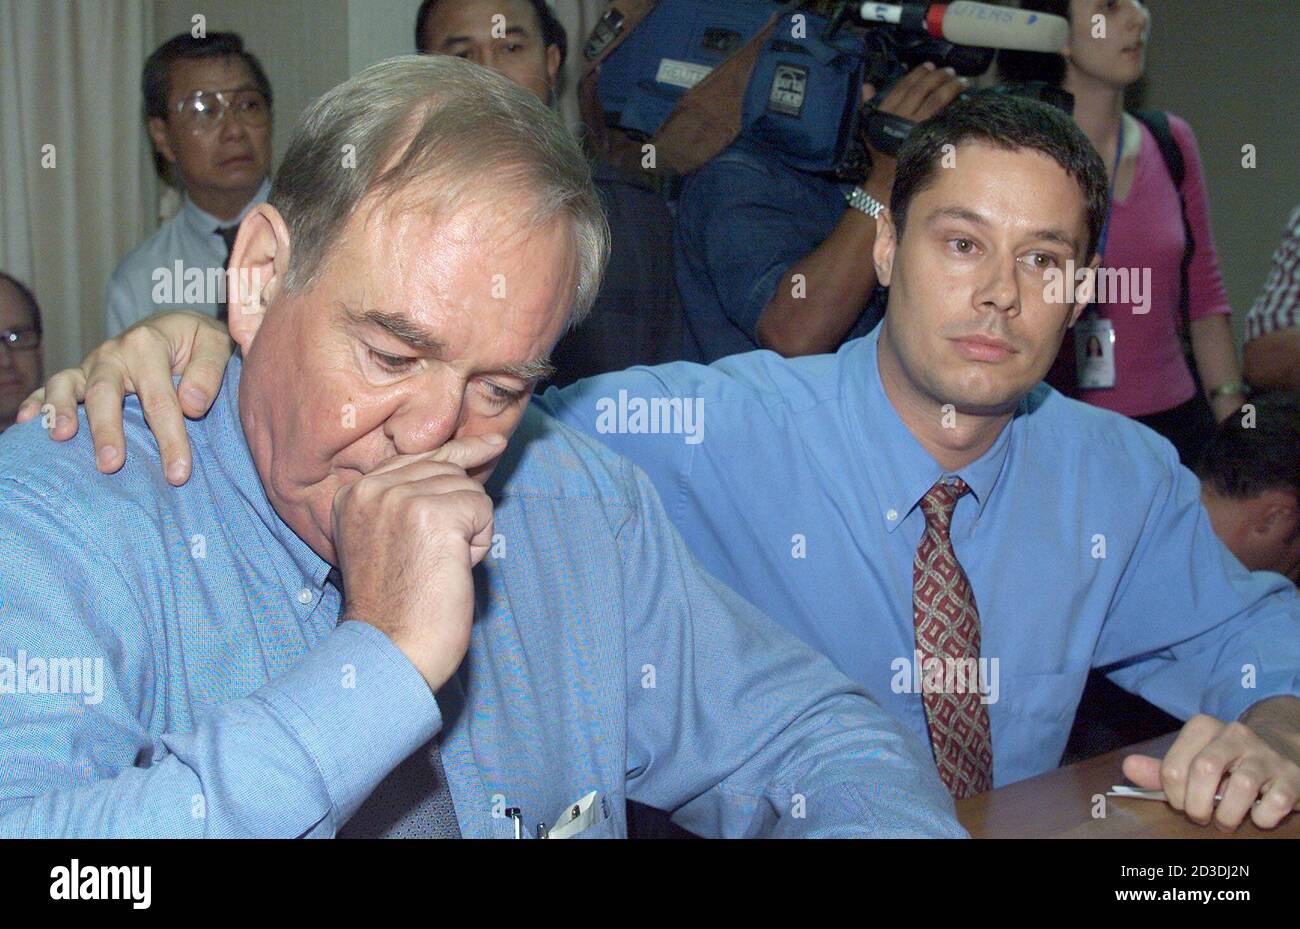 El periodista británico Rodney Tasker, de 56 años (L), es consolado por su  colega estadounidense Shawn Crispin, de 33 años, después de reunirse con la  policía de inmigración en Bangkok el 27